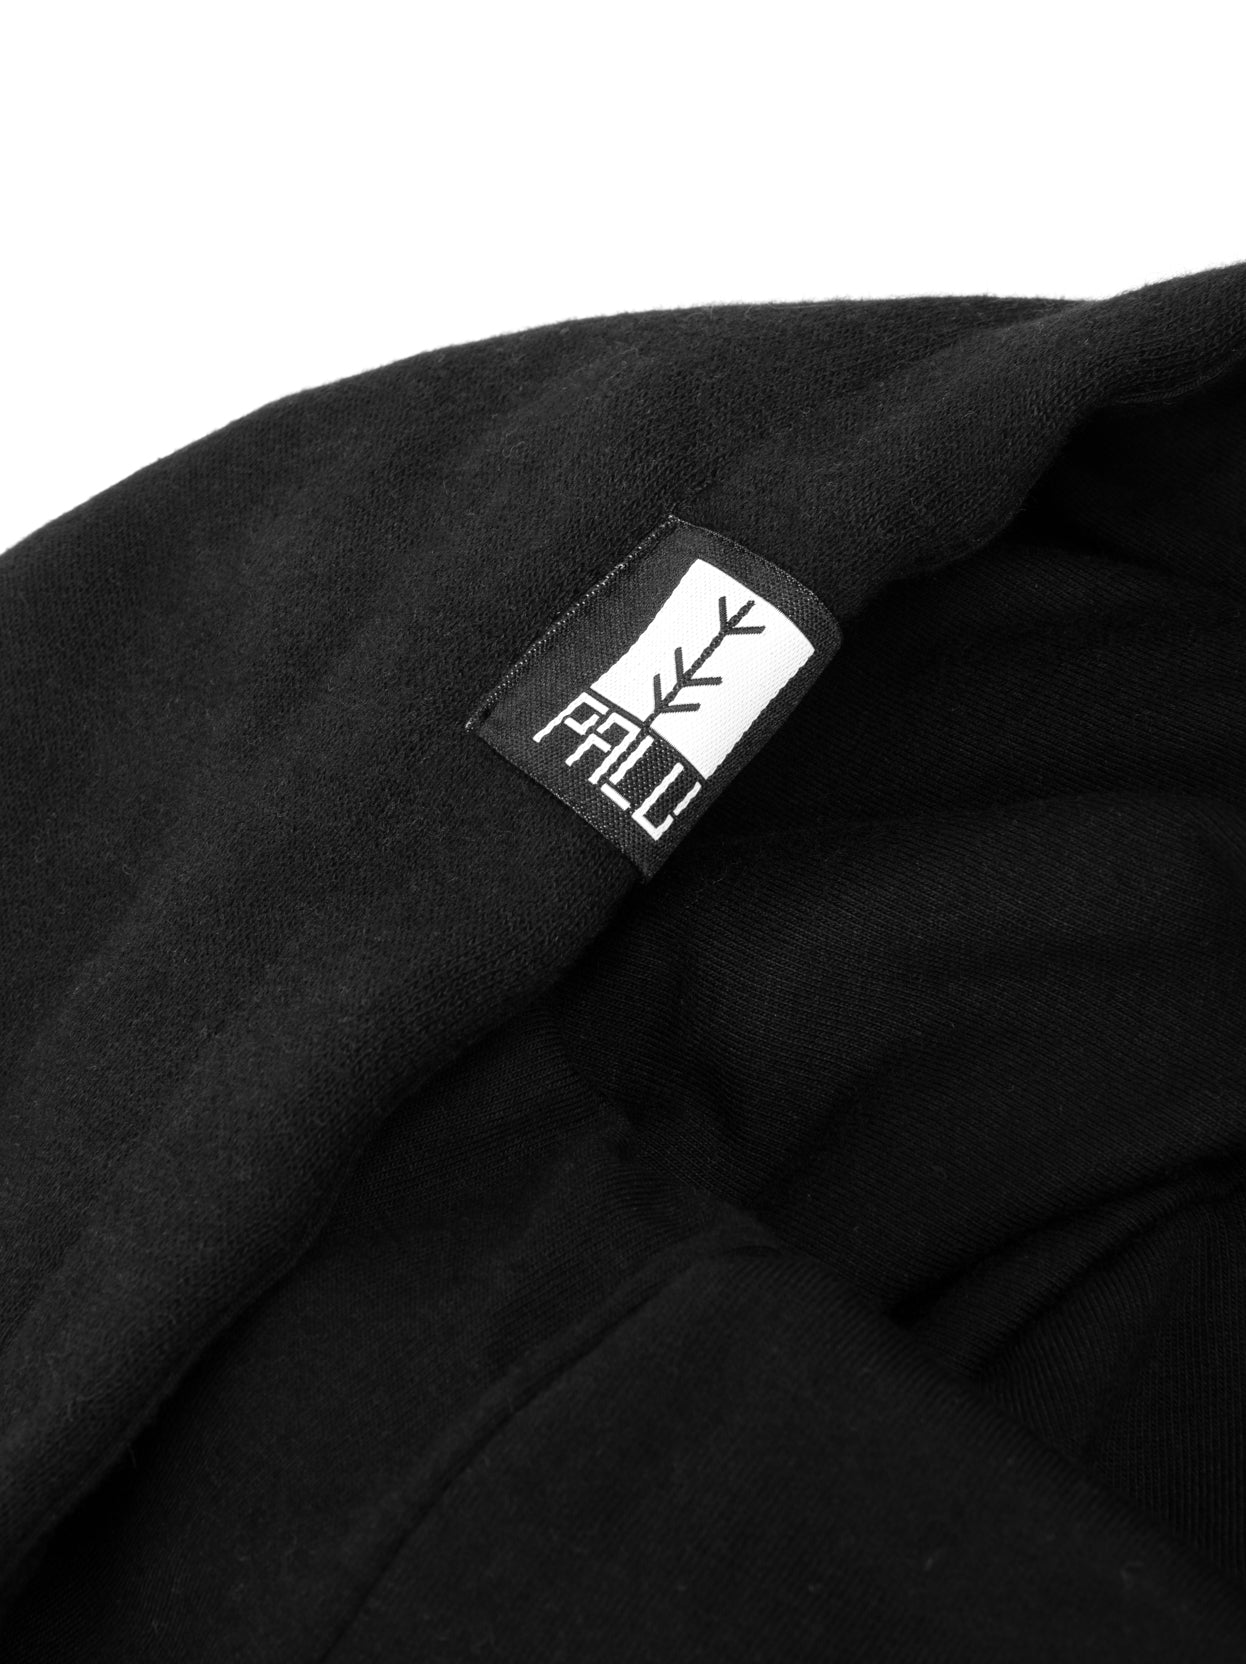 Black wave hoodie hood tag